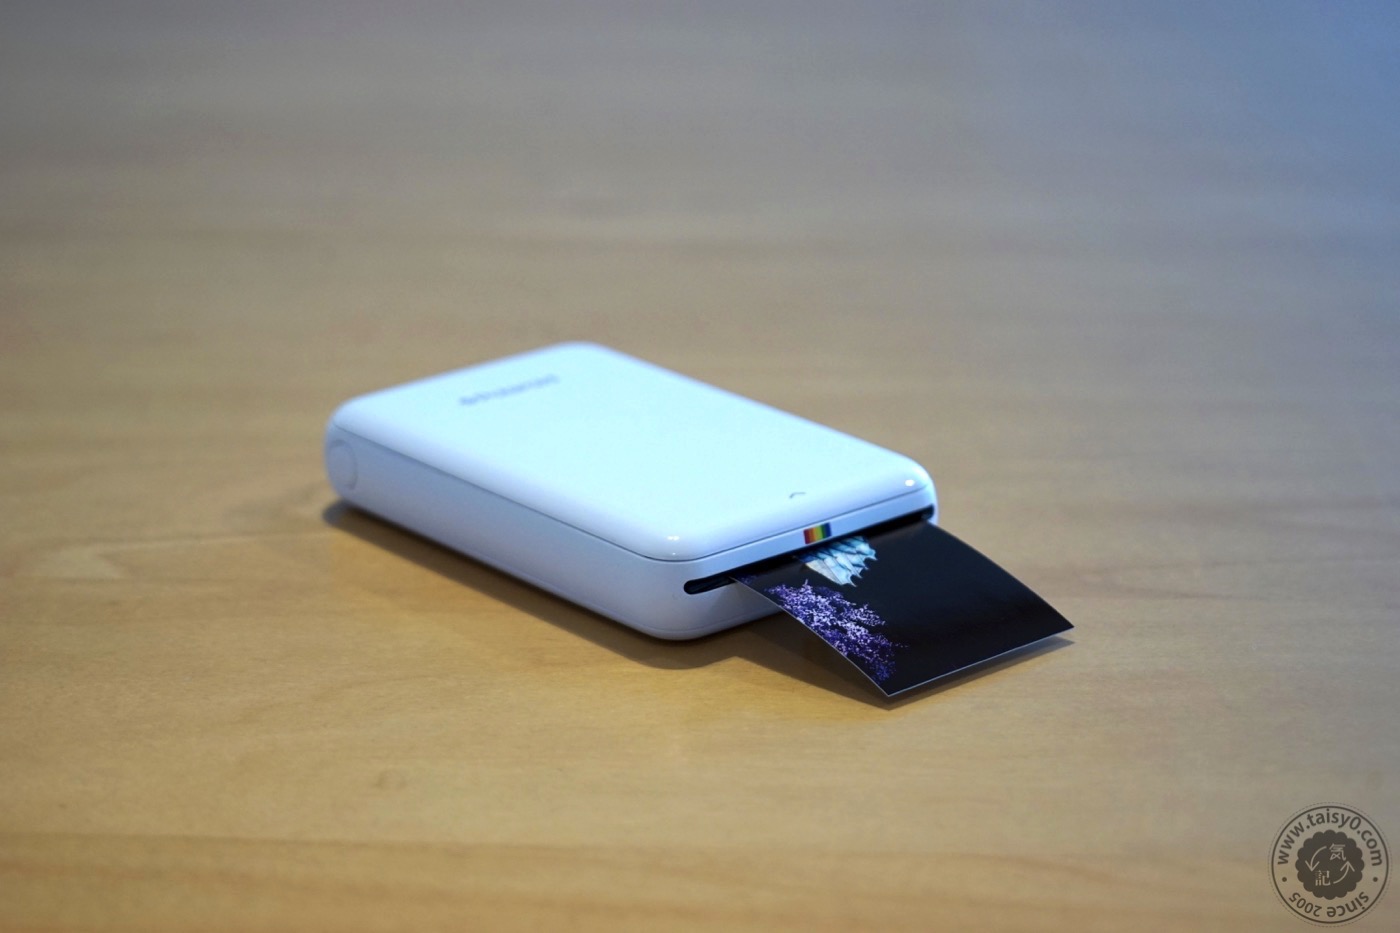 Polaroid、スマートフォン等で撮った写真をすぐにプリントできるモバイルプリンター｢Polaroid Zip｣を発売